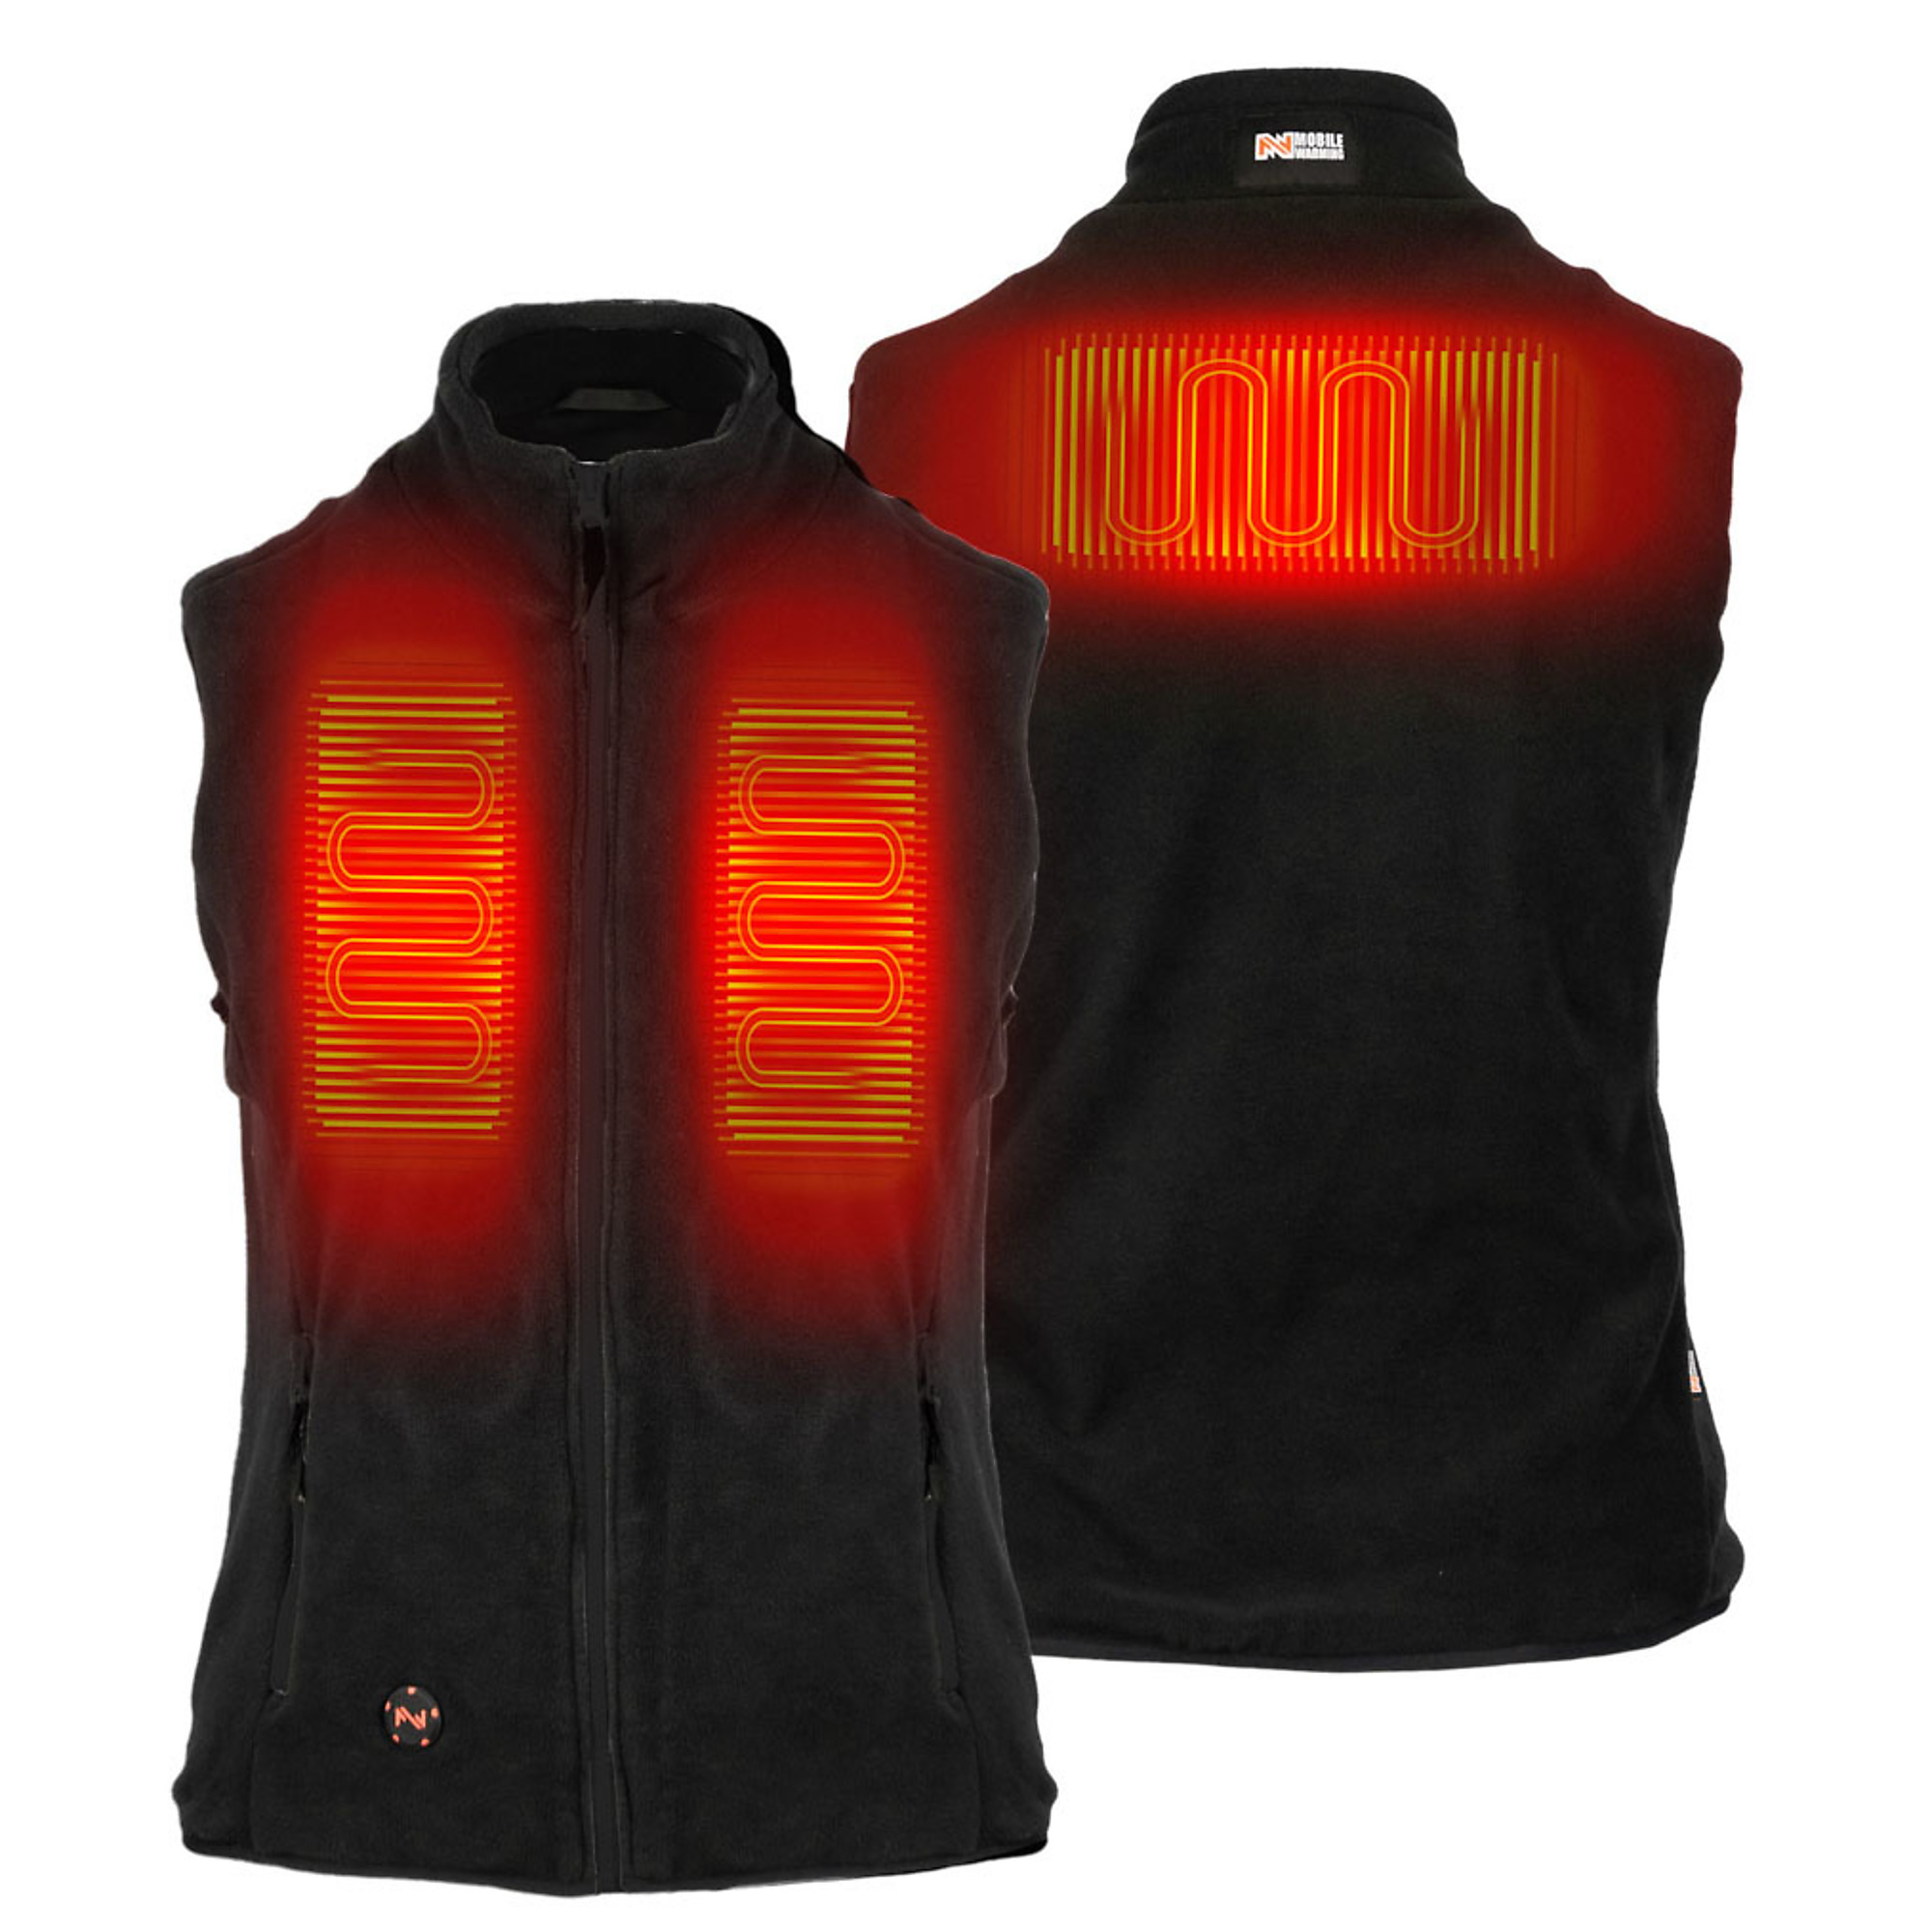 Fieldsheer, Women's Trek Heated Vest with 7.4v Battery, Size 2XL, Color Black, Model MWWV18010622